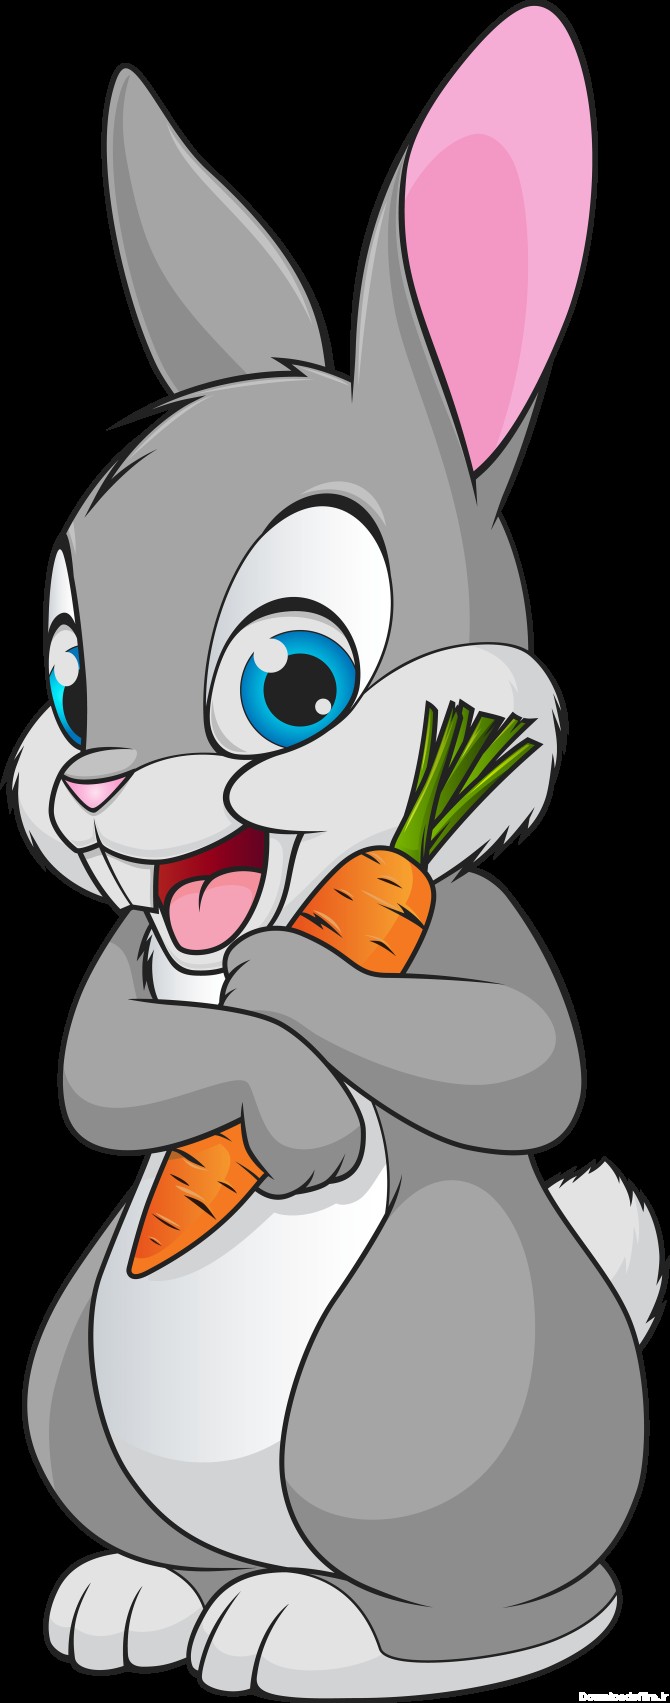 عکس خرگوش کارتونی - عکس PNG کارتونی خرگوش - Bunny PNG ...